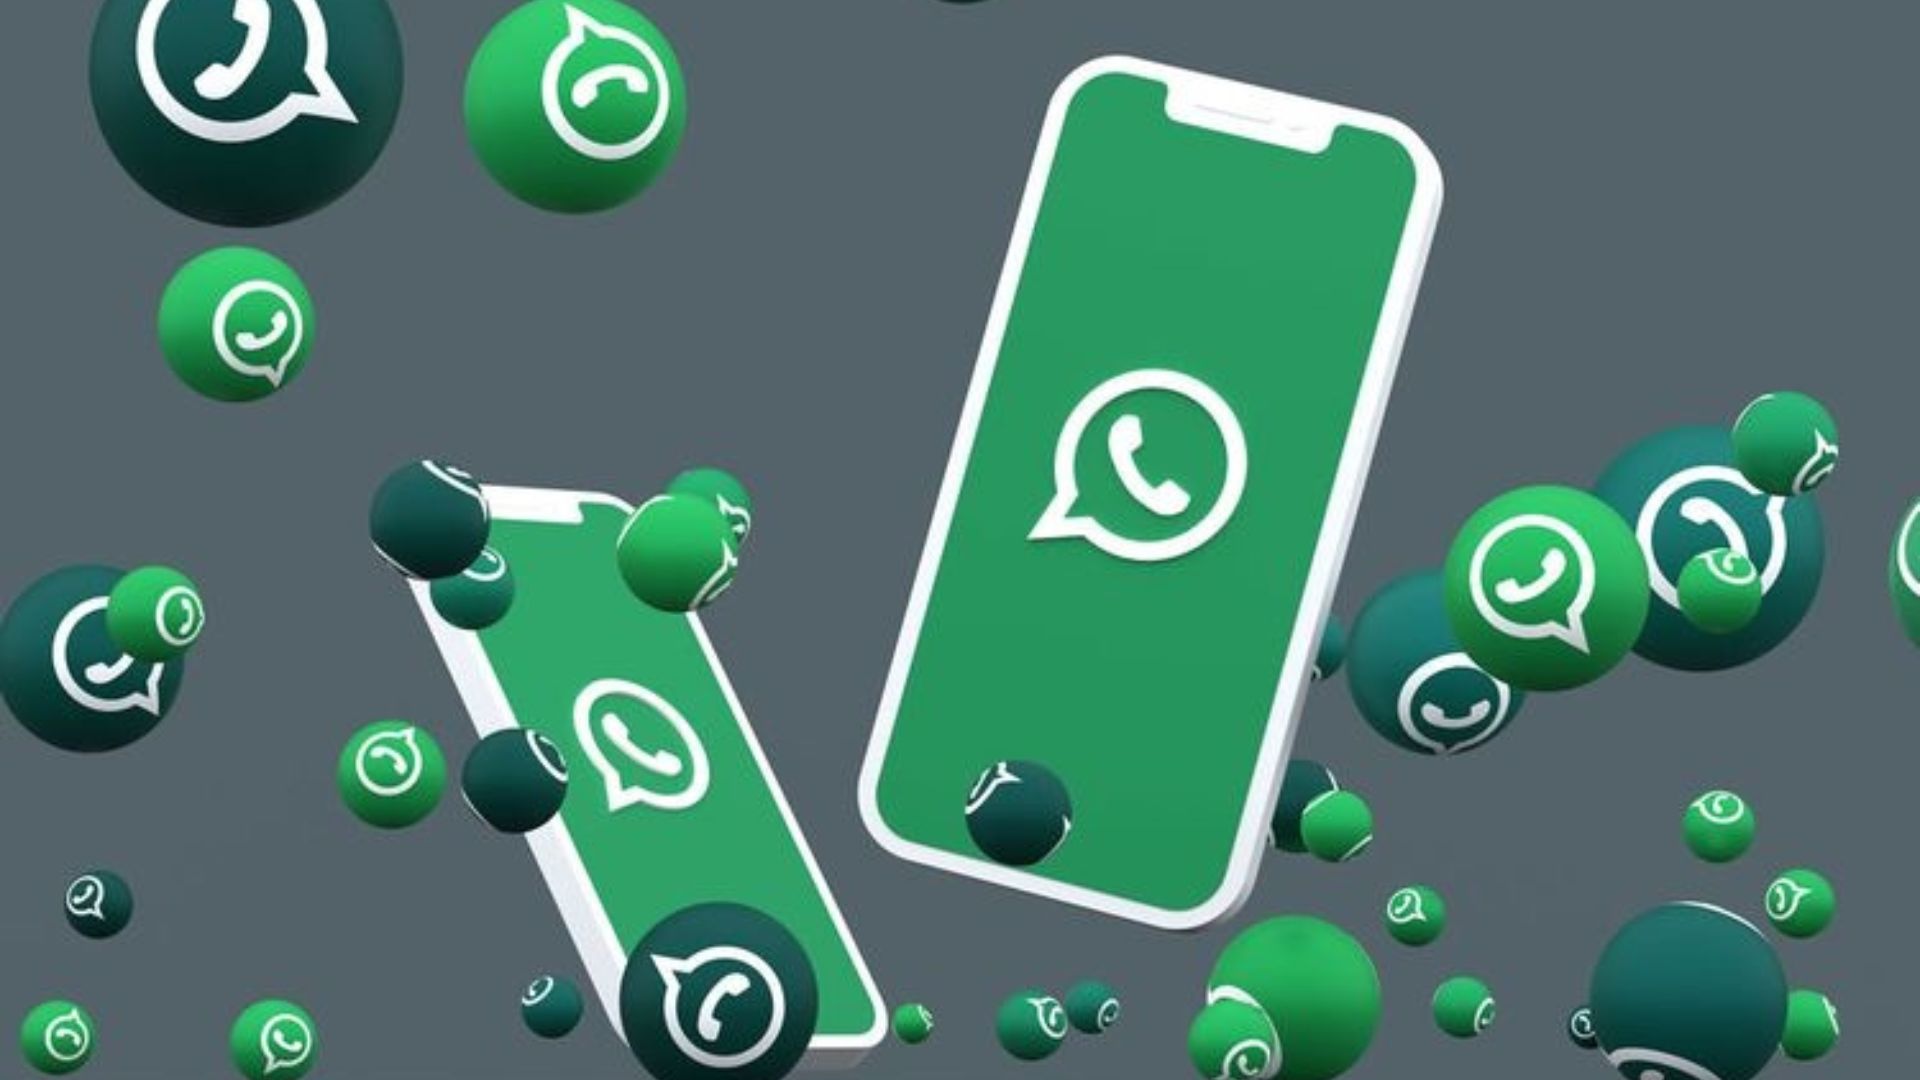 Imagem de fundo cinza com dois celulares que trazem em sua tela o logo do whatsapp. Ao redor deles, balões verdes com o logo do app.